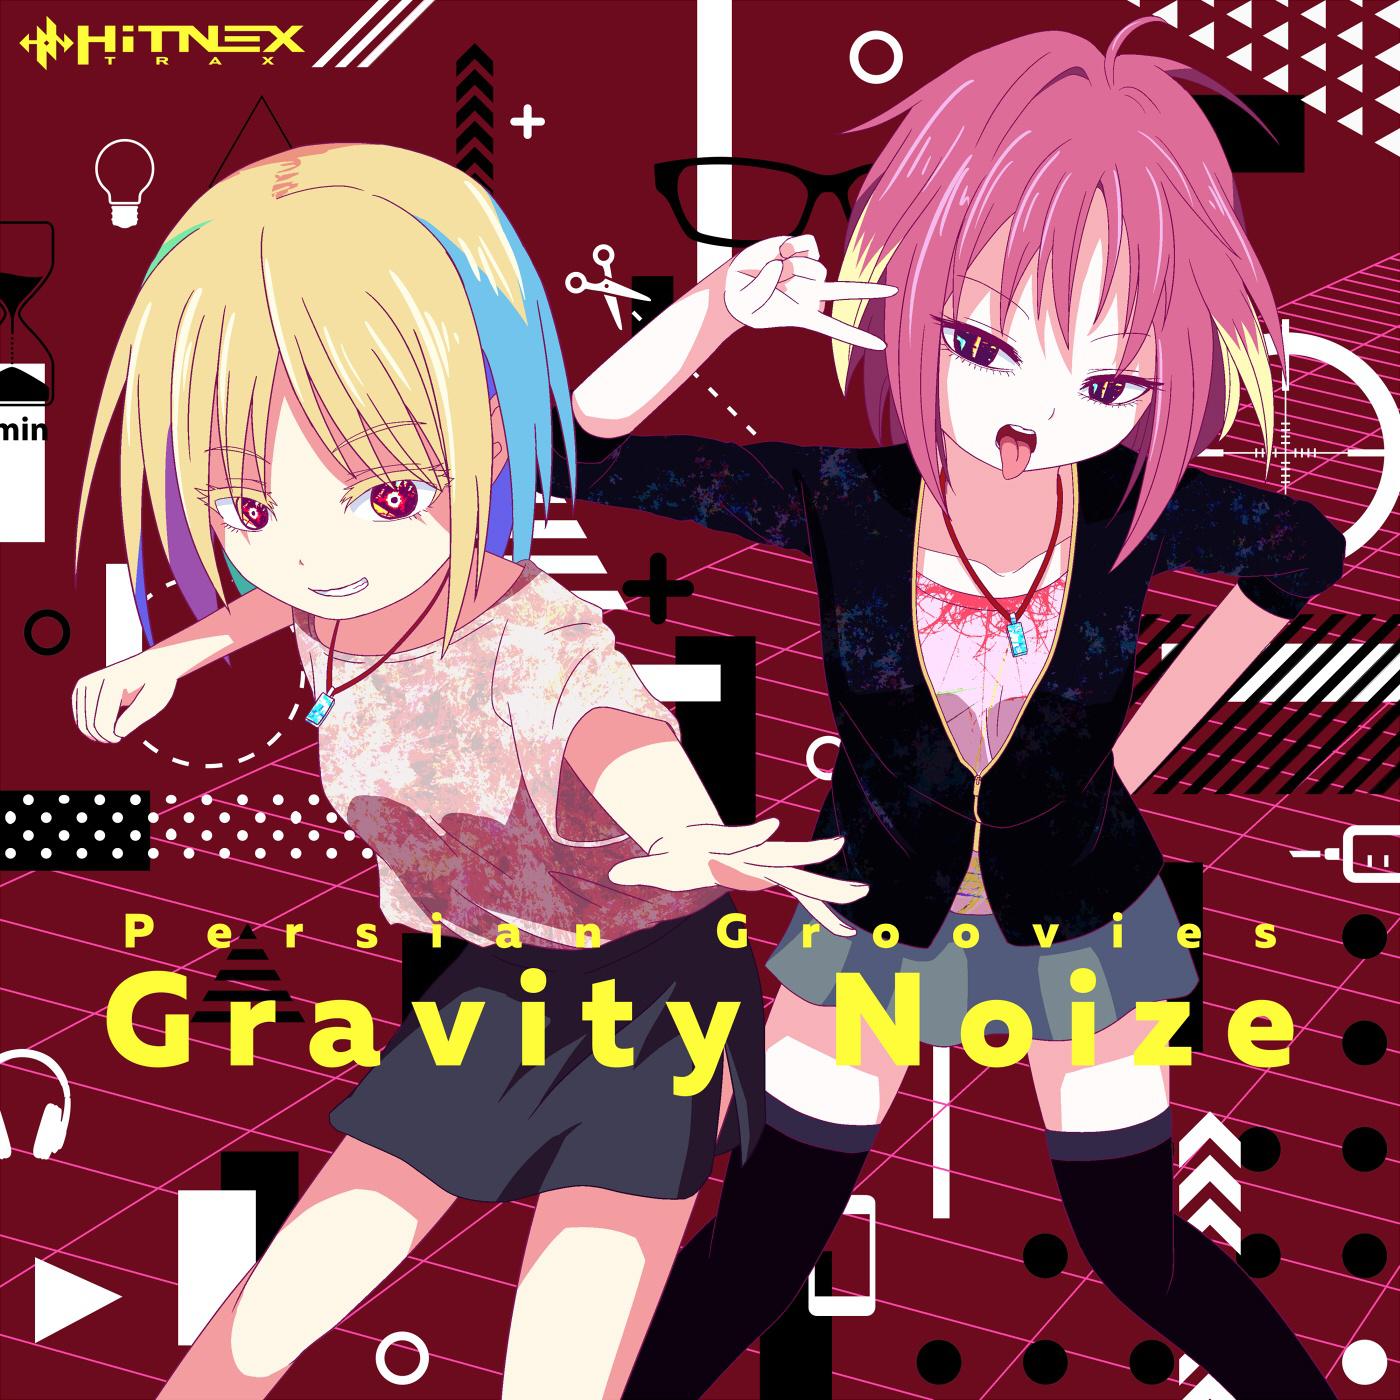 Gravity Noize